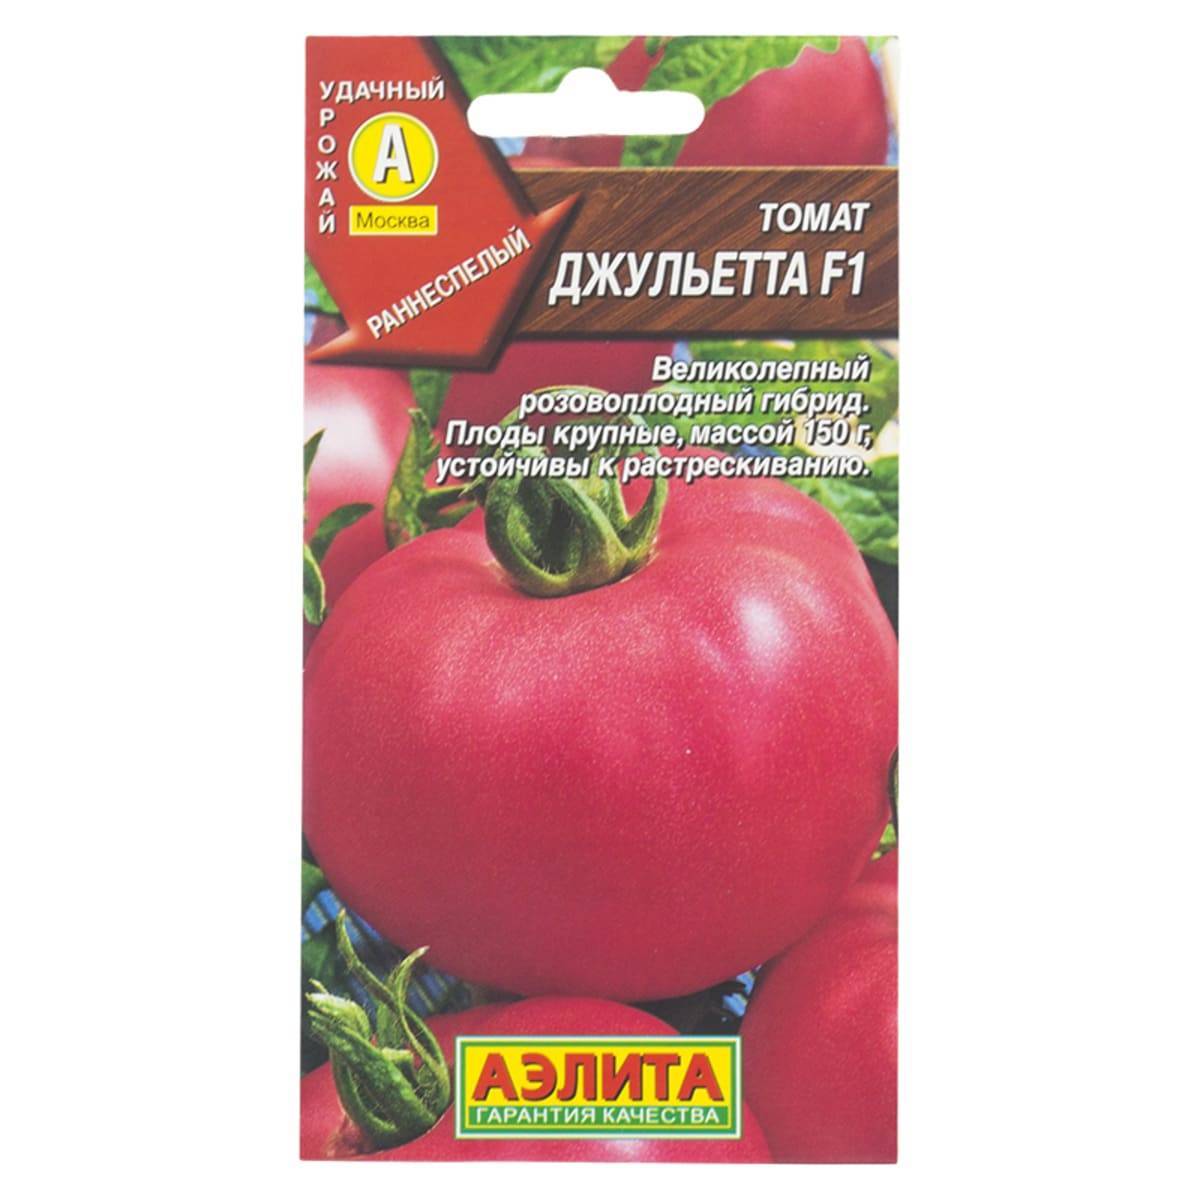 Описание гибридного томата Джульетта и выращивание сорта из семян